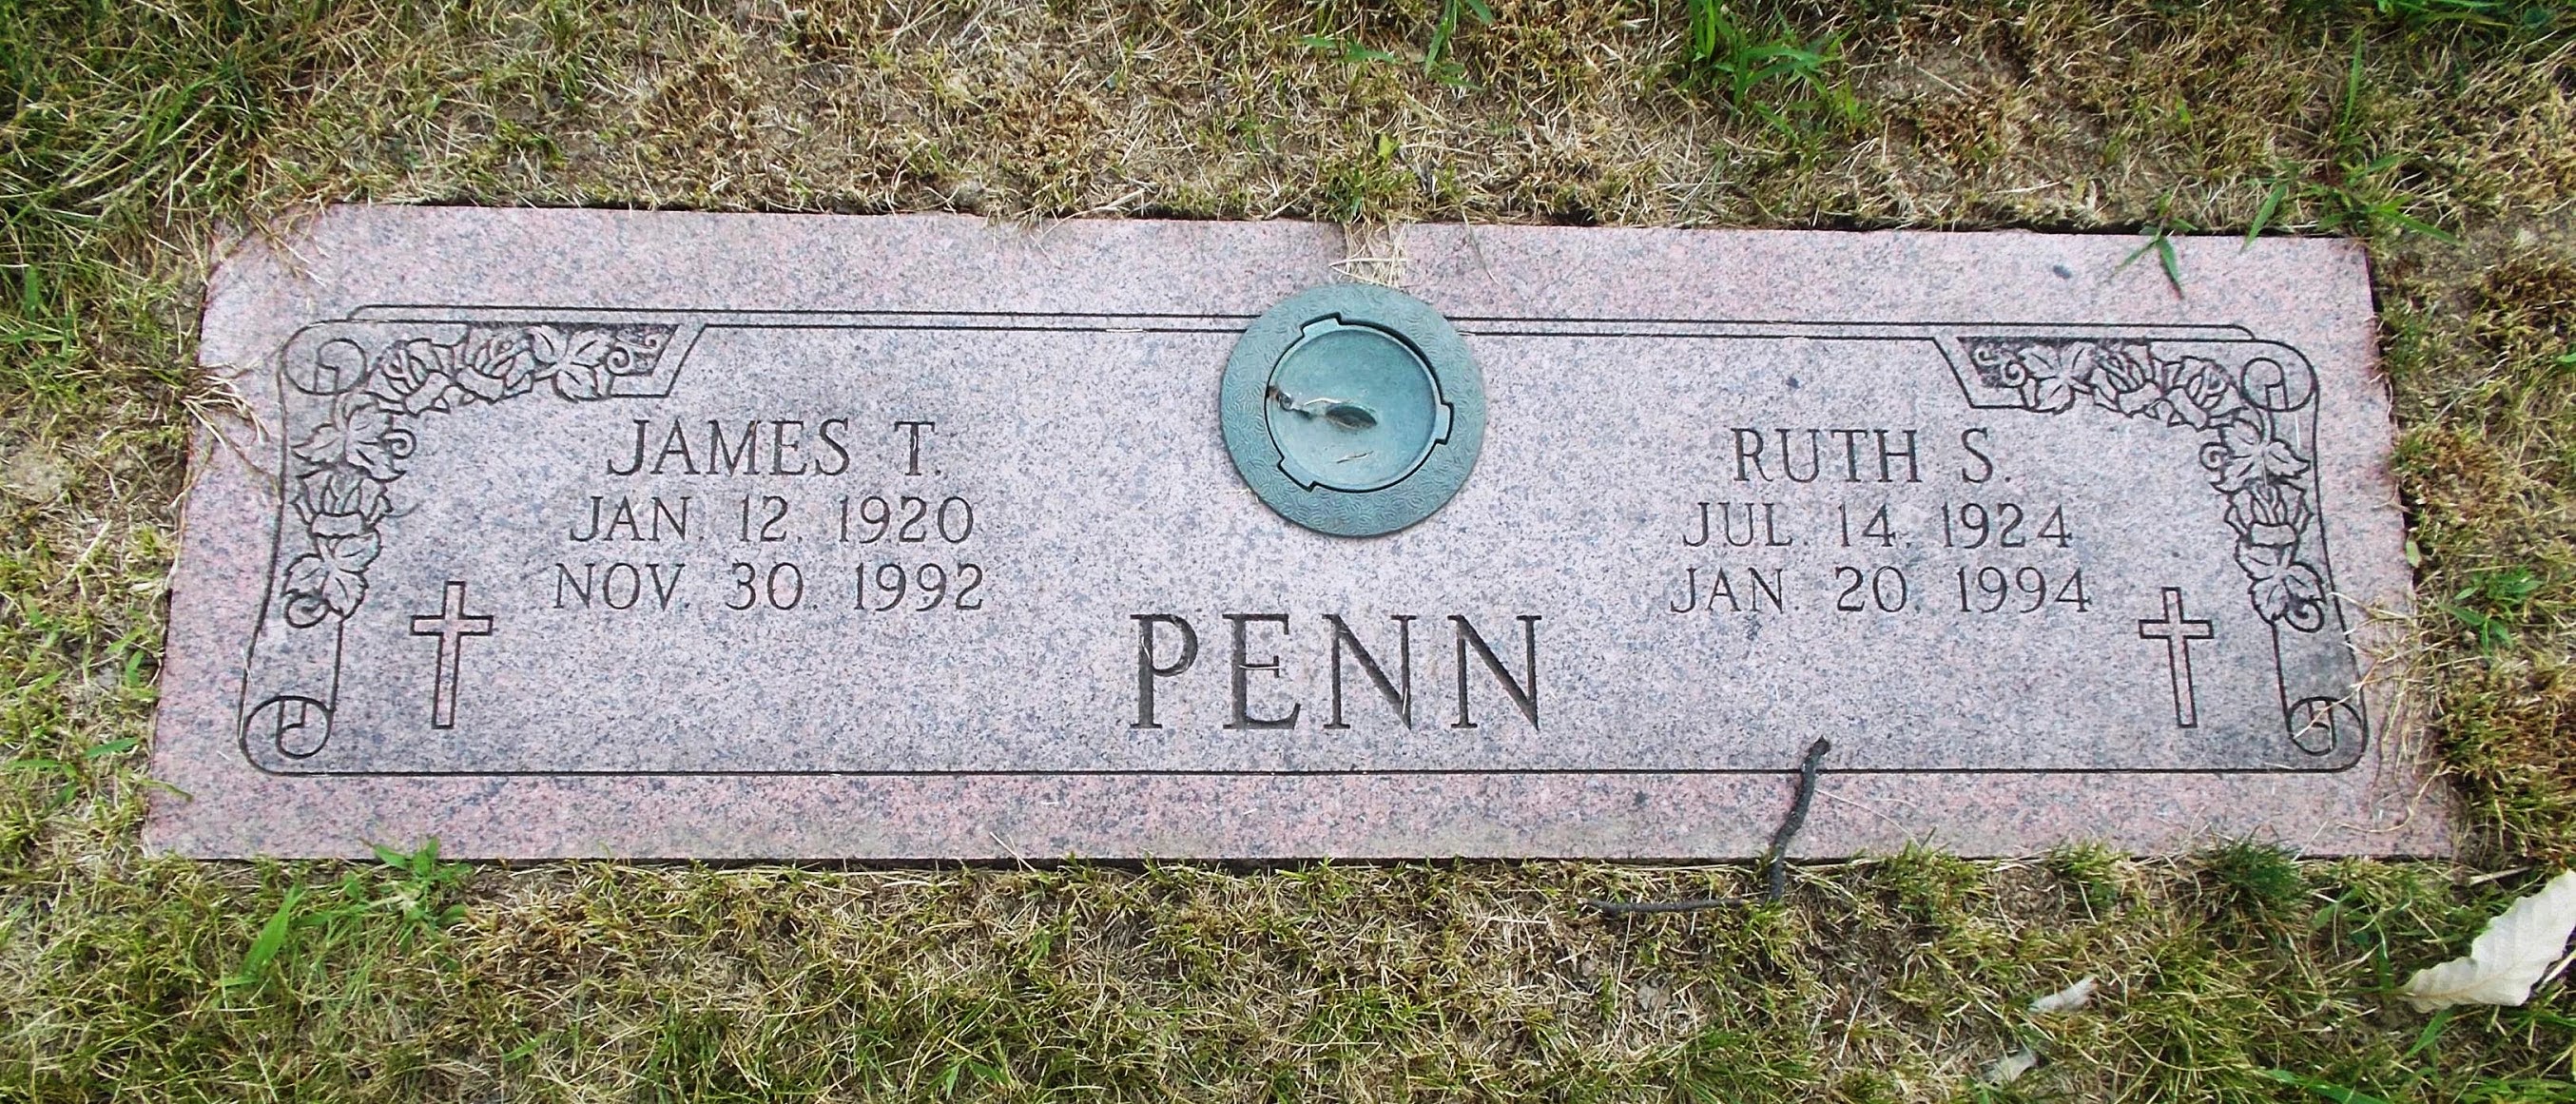 Ruth S Penn